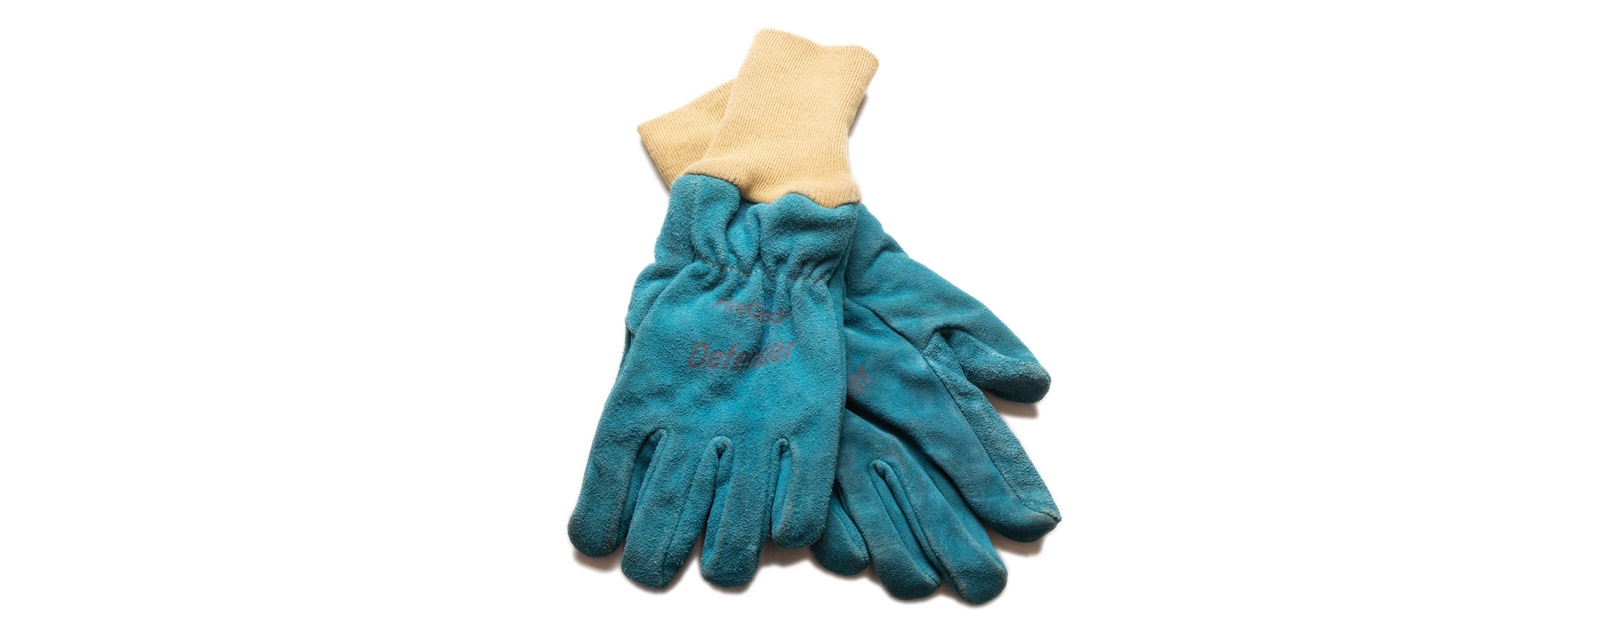 firefighter gloves